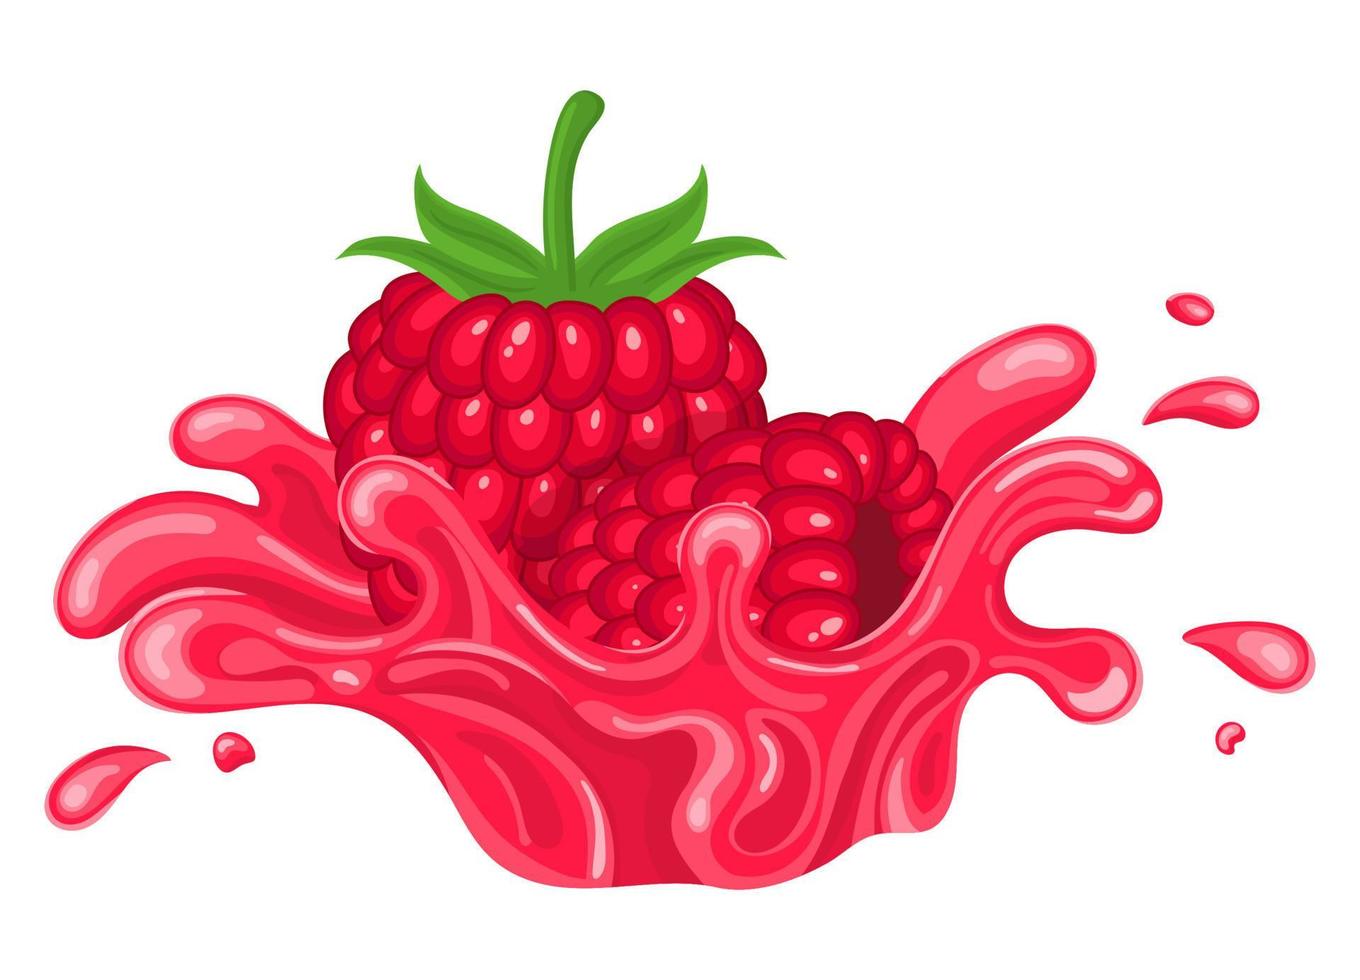 explosión de salpicaduras de jugo de frambuesa fresca y brillante aislada en fondo blanco. jugo de frutas de verano. estilo de dibujos animados ilustración vectorial para cualquier diseño. vector